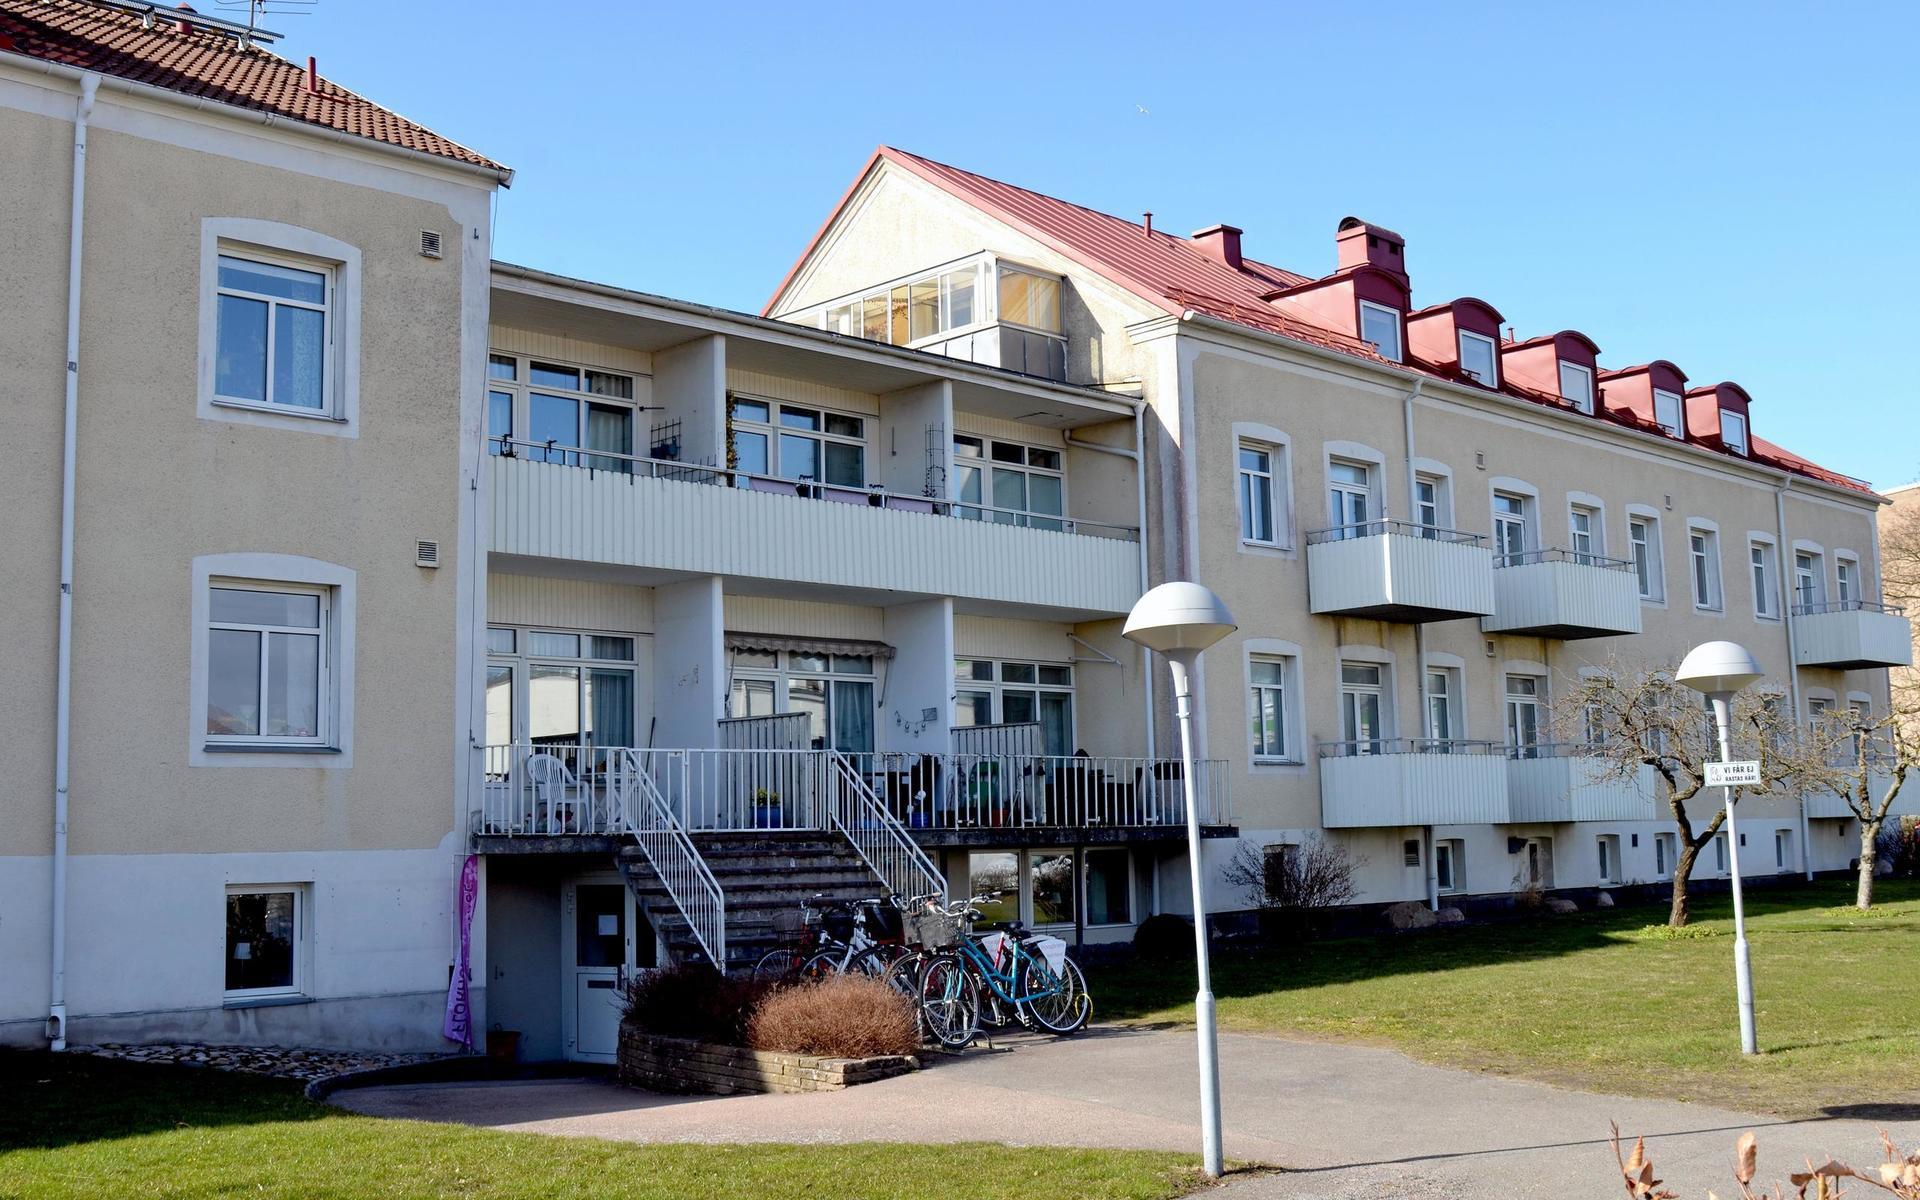 Falkenbergs Bostad AB säljer hyreshus på Sandgatan för att kommunen ska lösa tvist med Ekängengruppens dotterbolag.